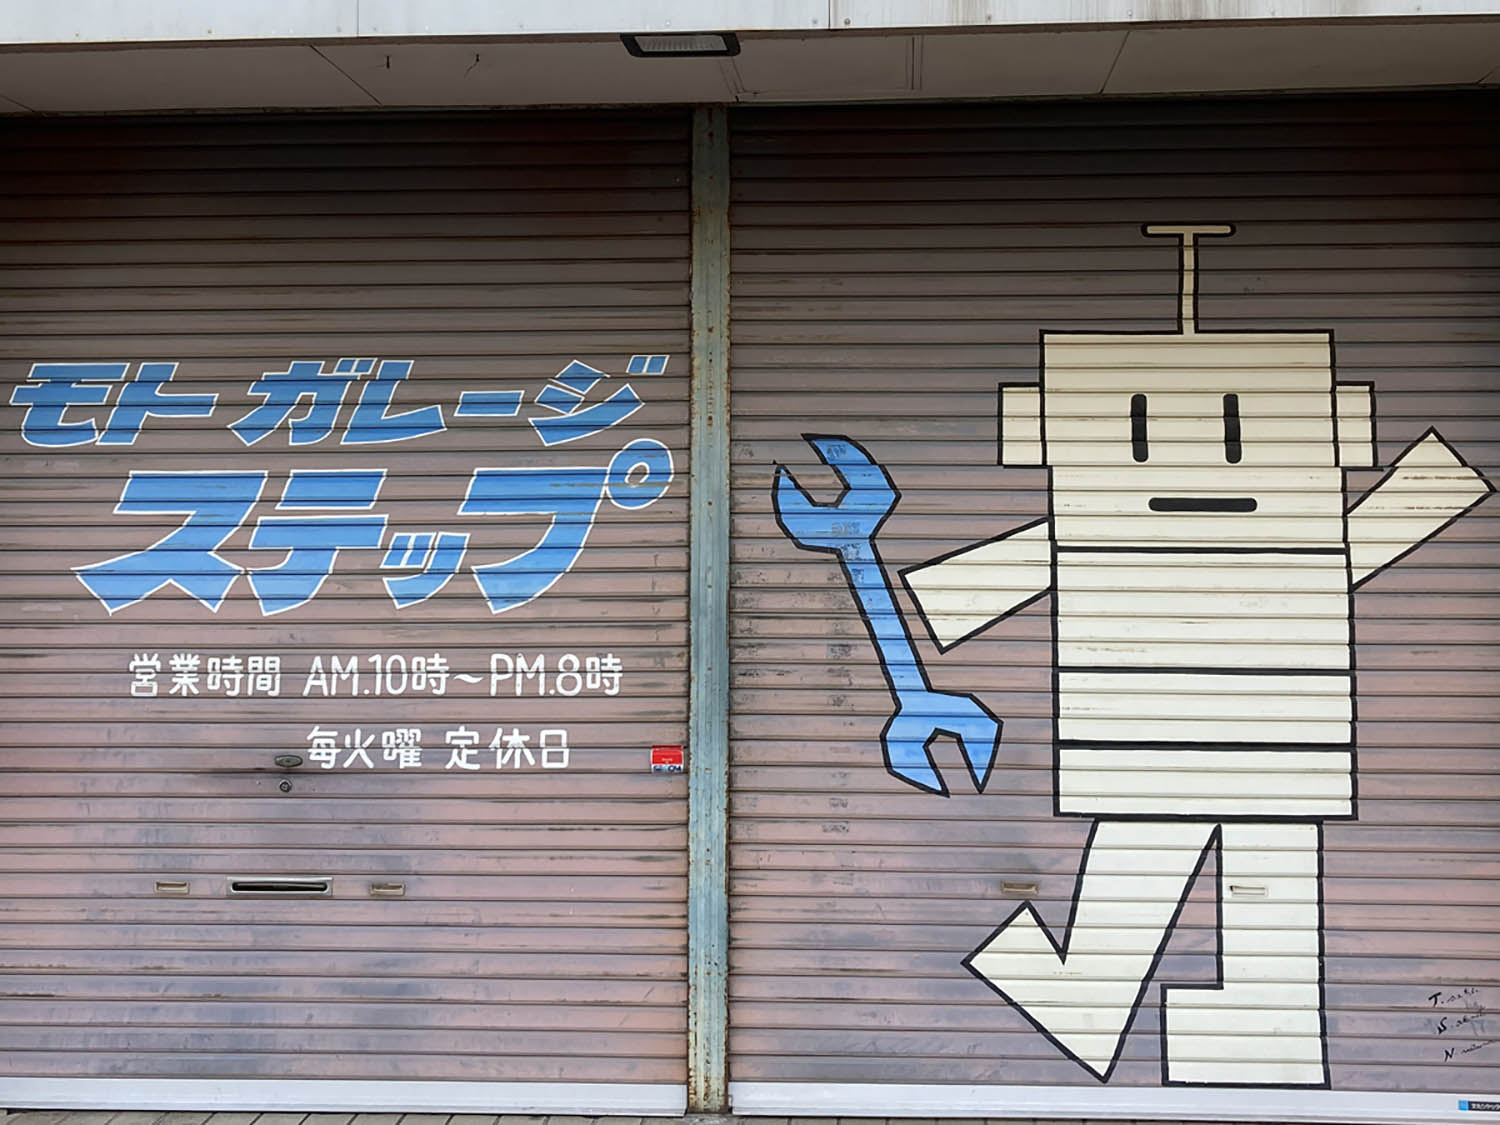 狛江のバイク店のシャッター。いかにもロボットという愛らしさ。